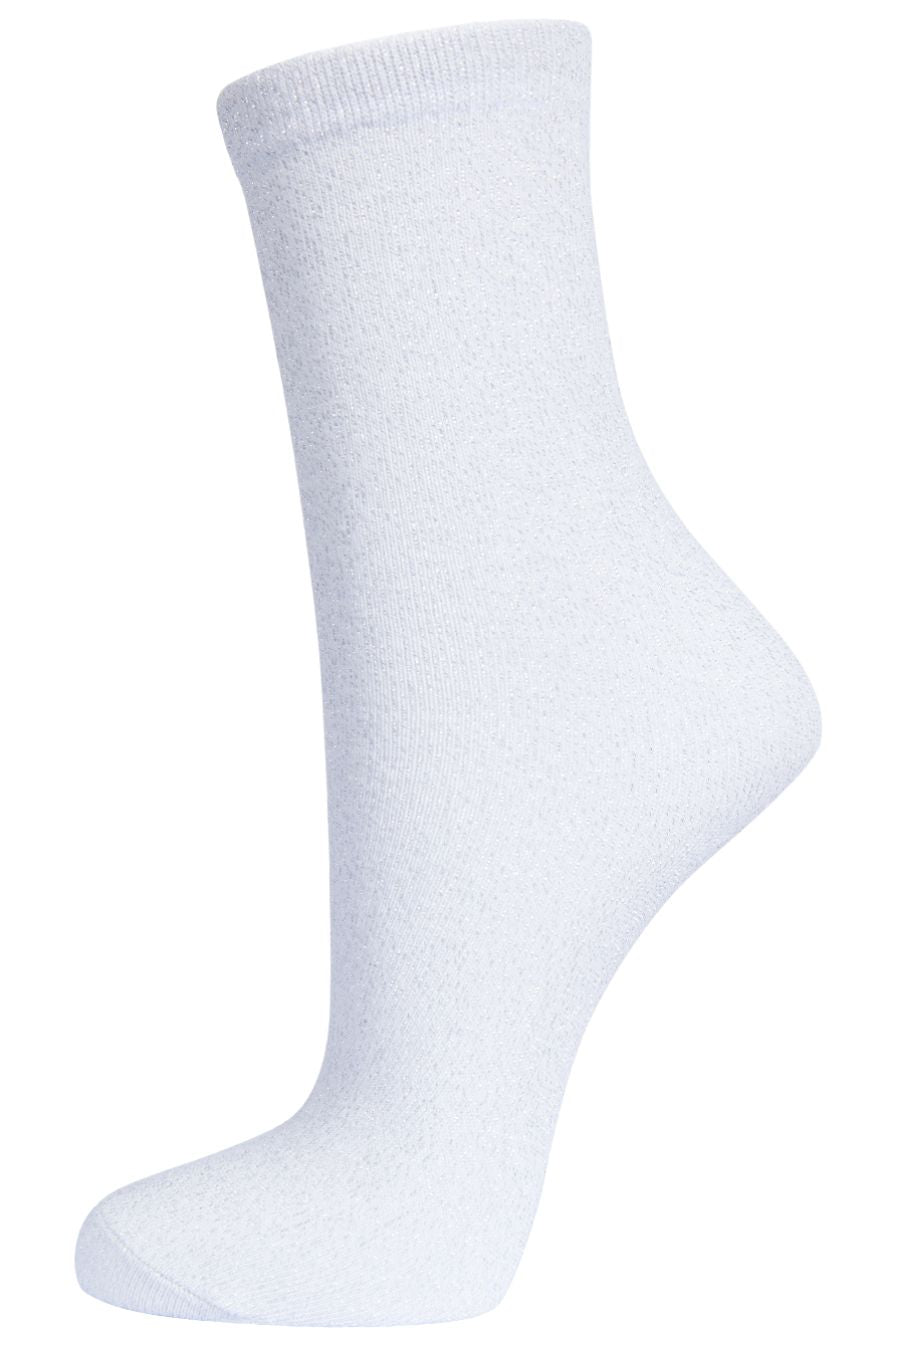 Womens Glitter Socks Silver Sparkly Ankle Socks Shimmer White